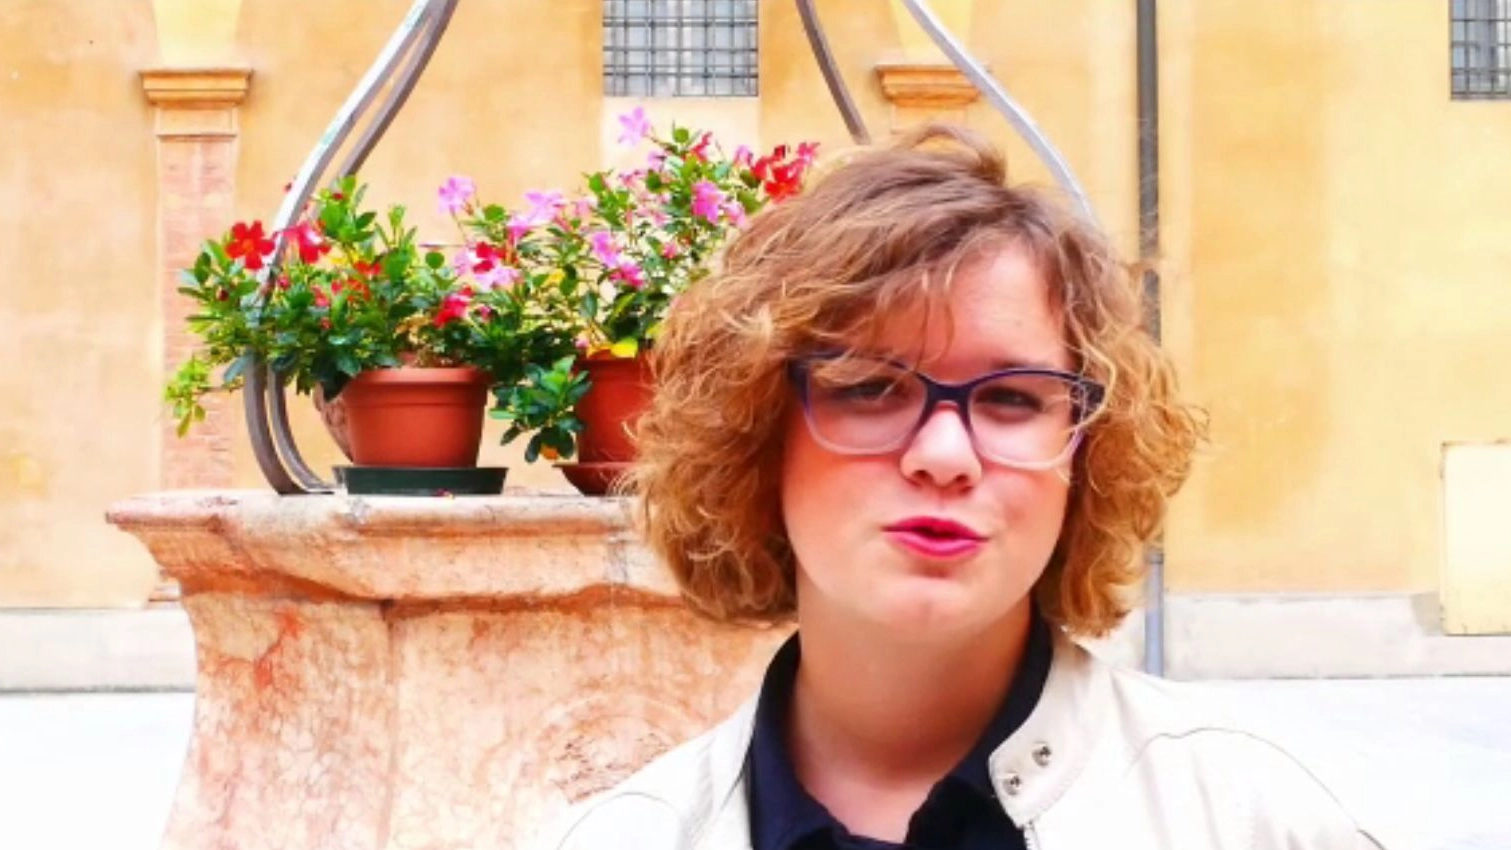 Giornate Fai di Autunno 2019, gli studenti di Reggio le promuovono con un video